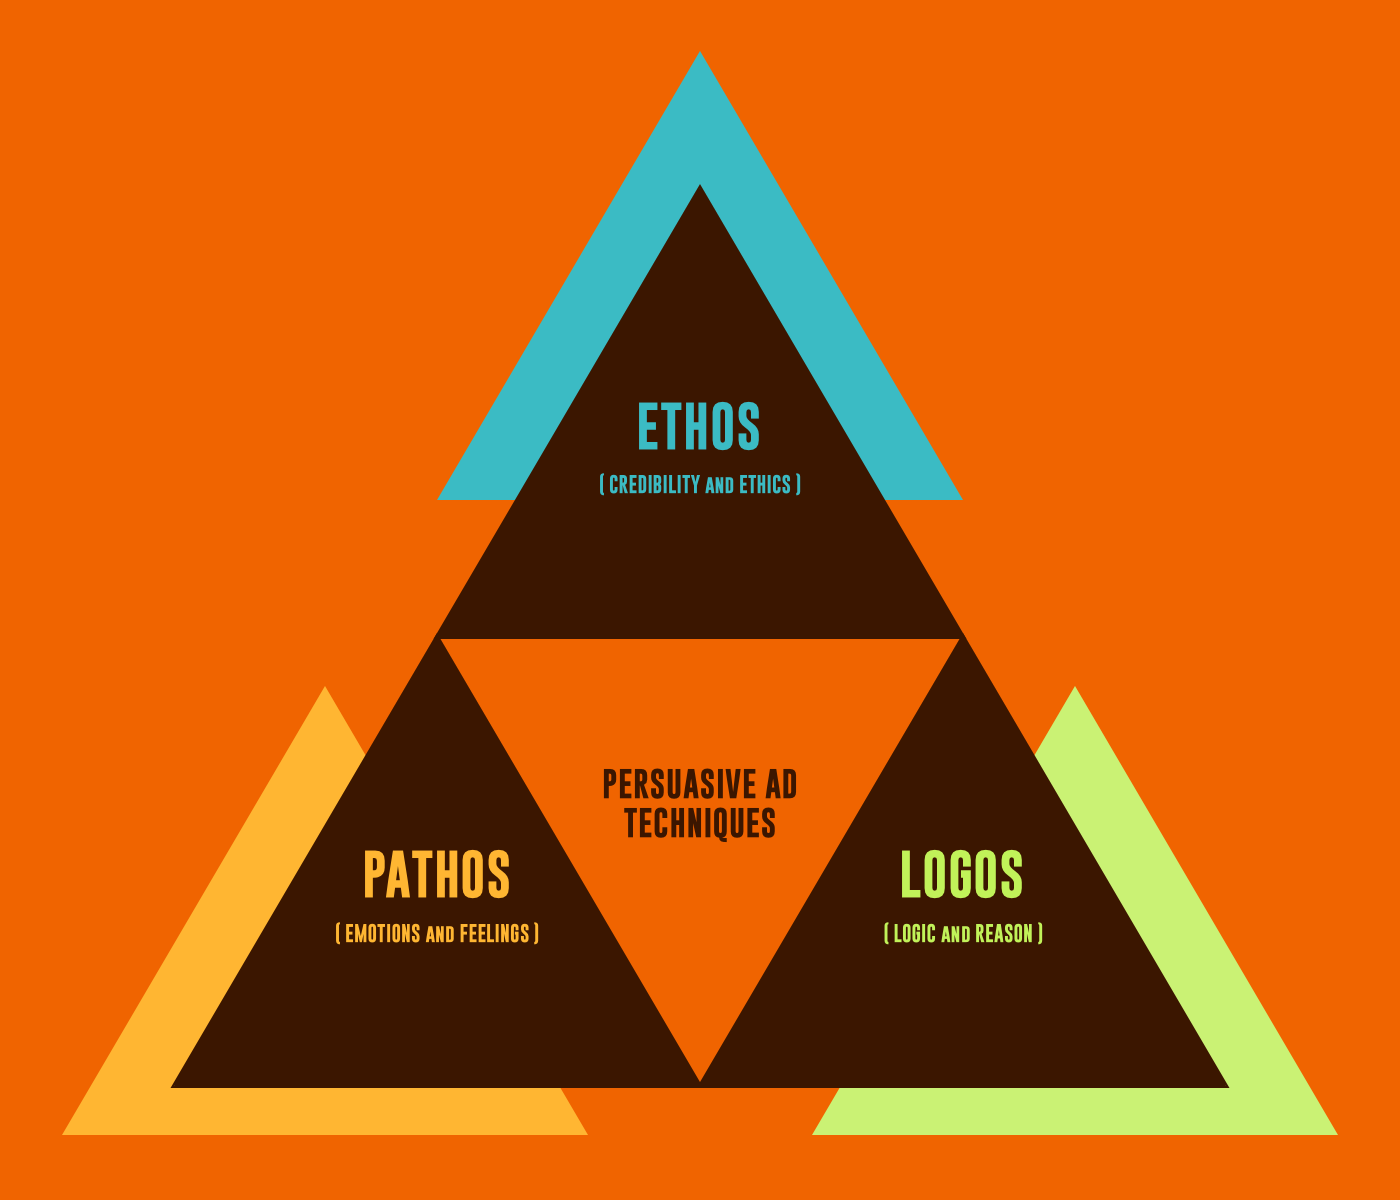 Using Ethos, Pathos, Logos in restoration marketing graphic on orange background